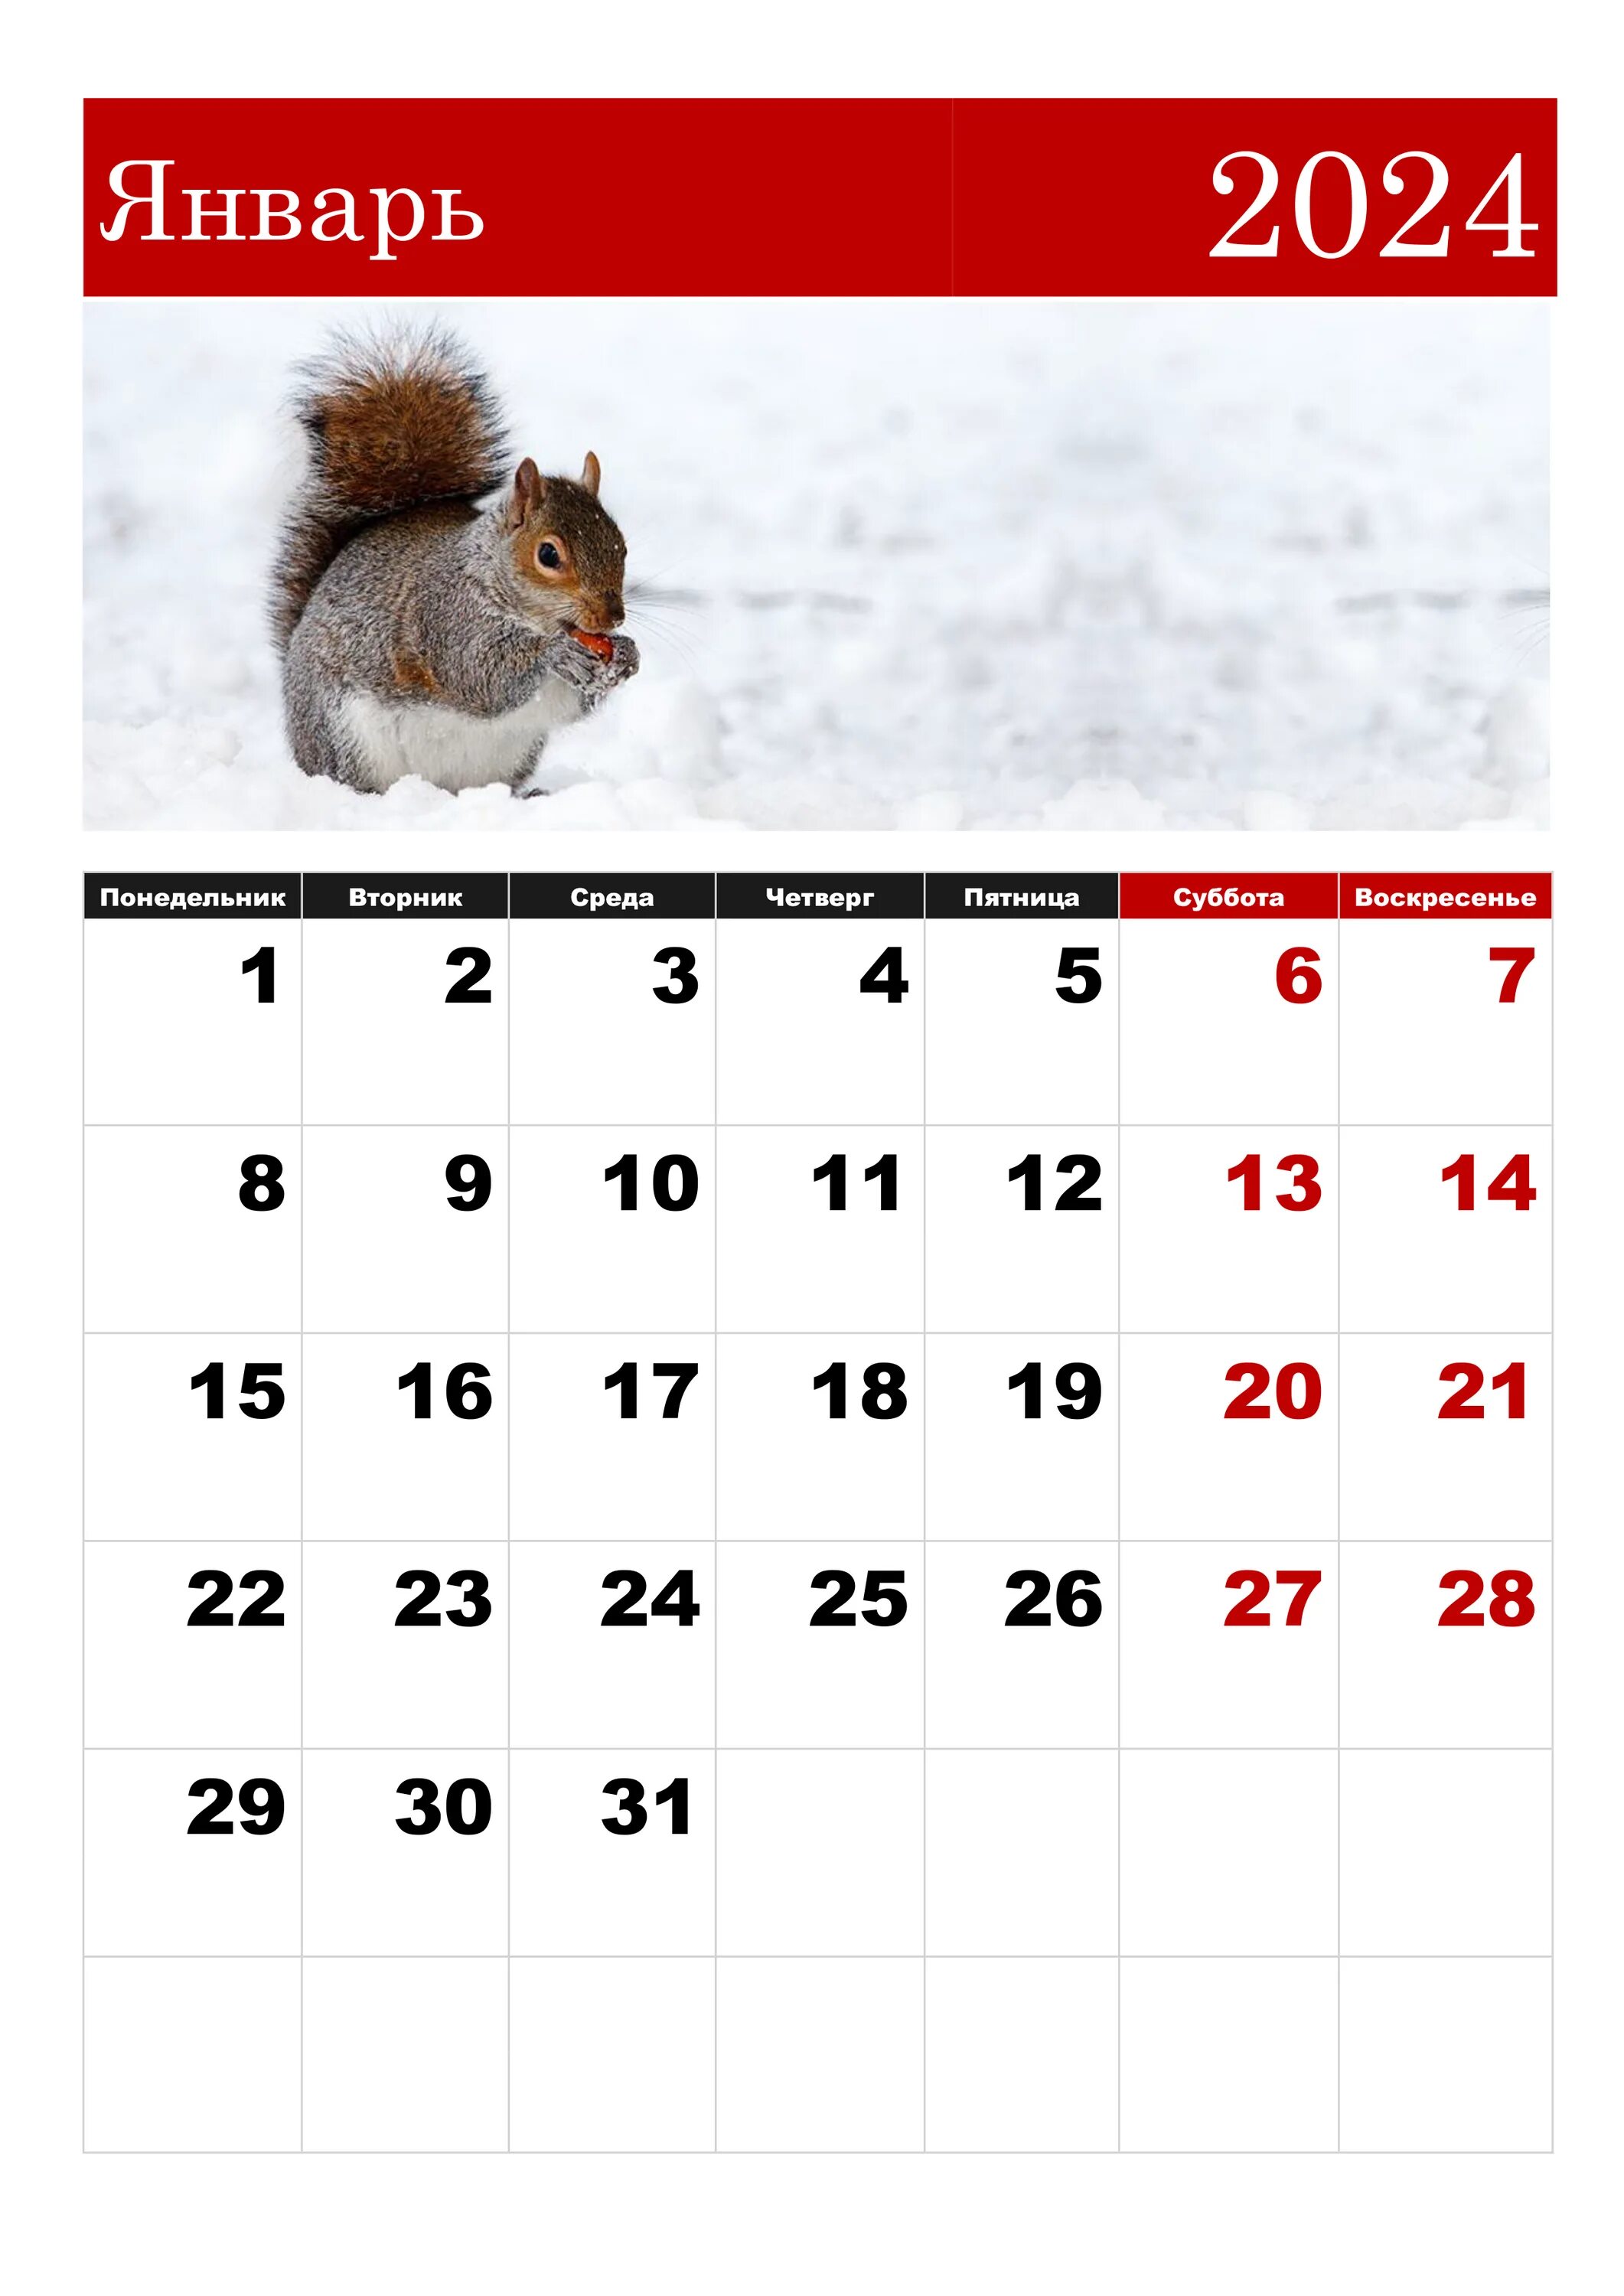 Календарная январь 2024. ЯНВАРЬРЬ 2024. Календарь январь. Календарь на январь 2024 года. Какой будет январь февраль 2024 года